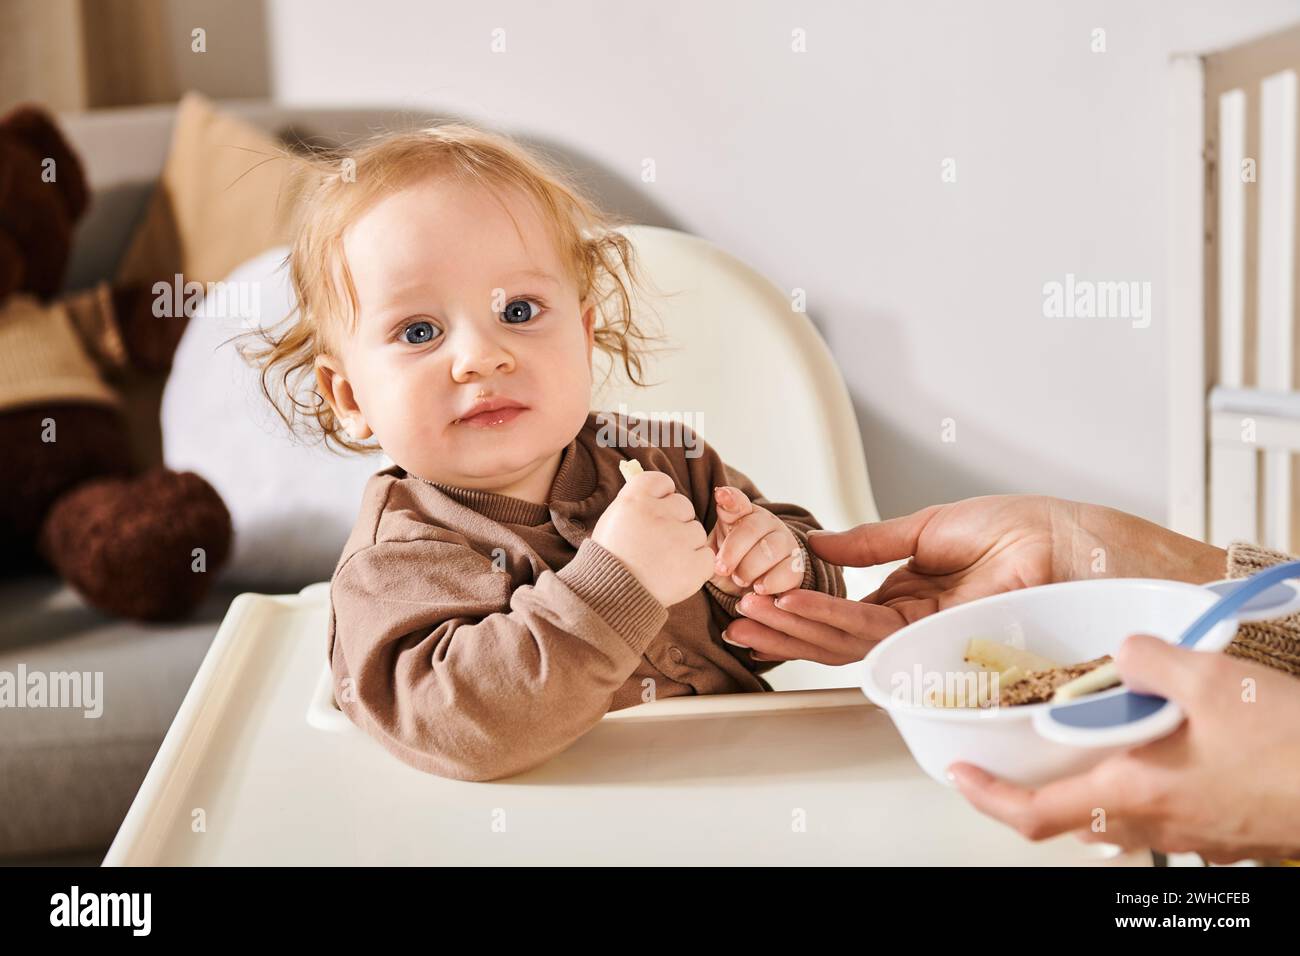 Entzückender Junge, der im Kinderstuhl sitzt und in die Kamera neben der Mutter blickt, mit einer Schüssel Frühstück Stockfoto